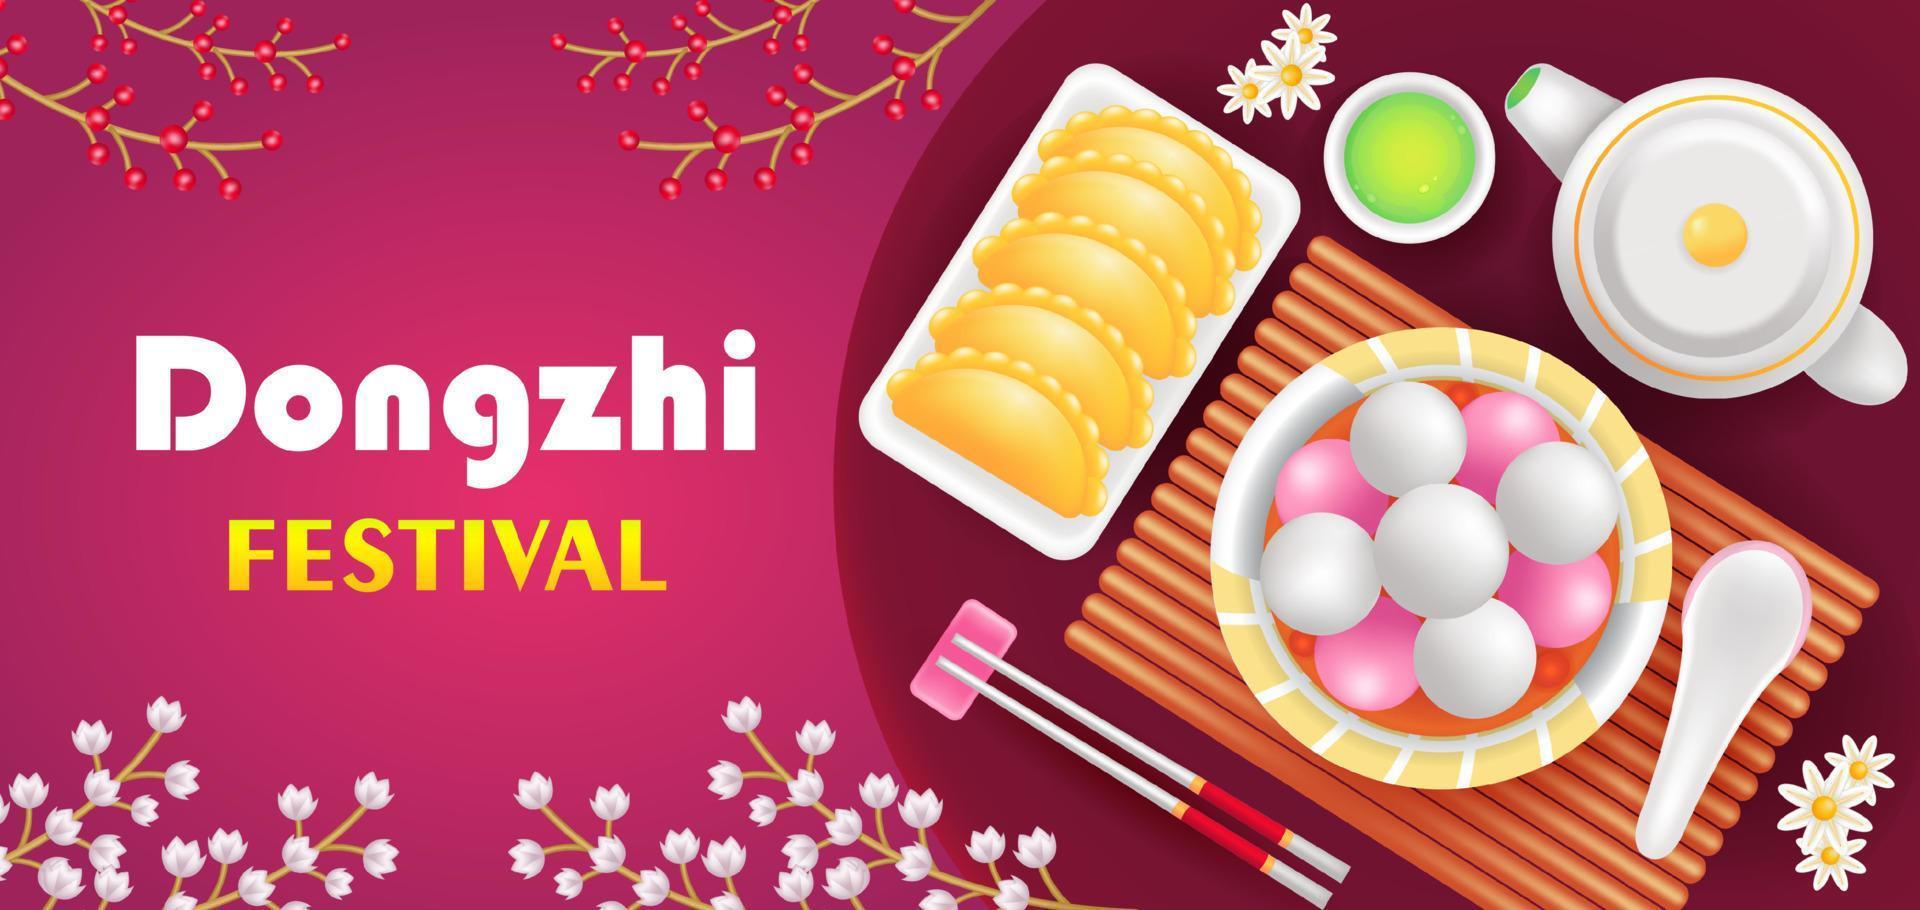 Festival Dongzhi. Ilustração 3D de bolinhos fritos, bolinhos de sopa doce, chá verde e ornamento floral vetor